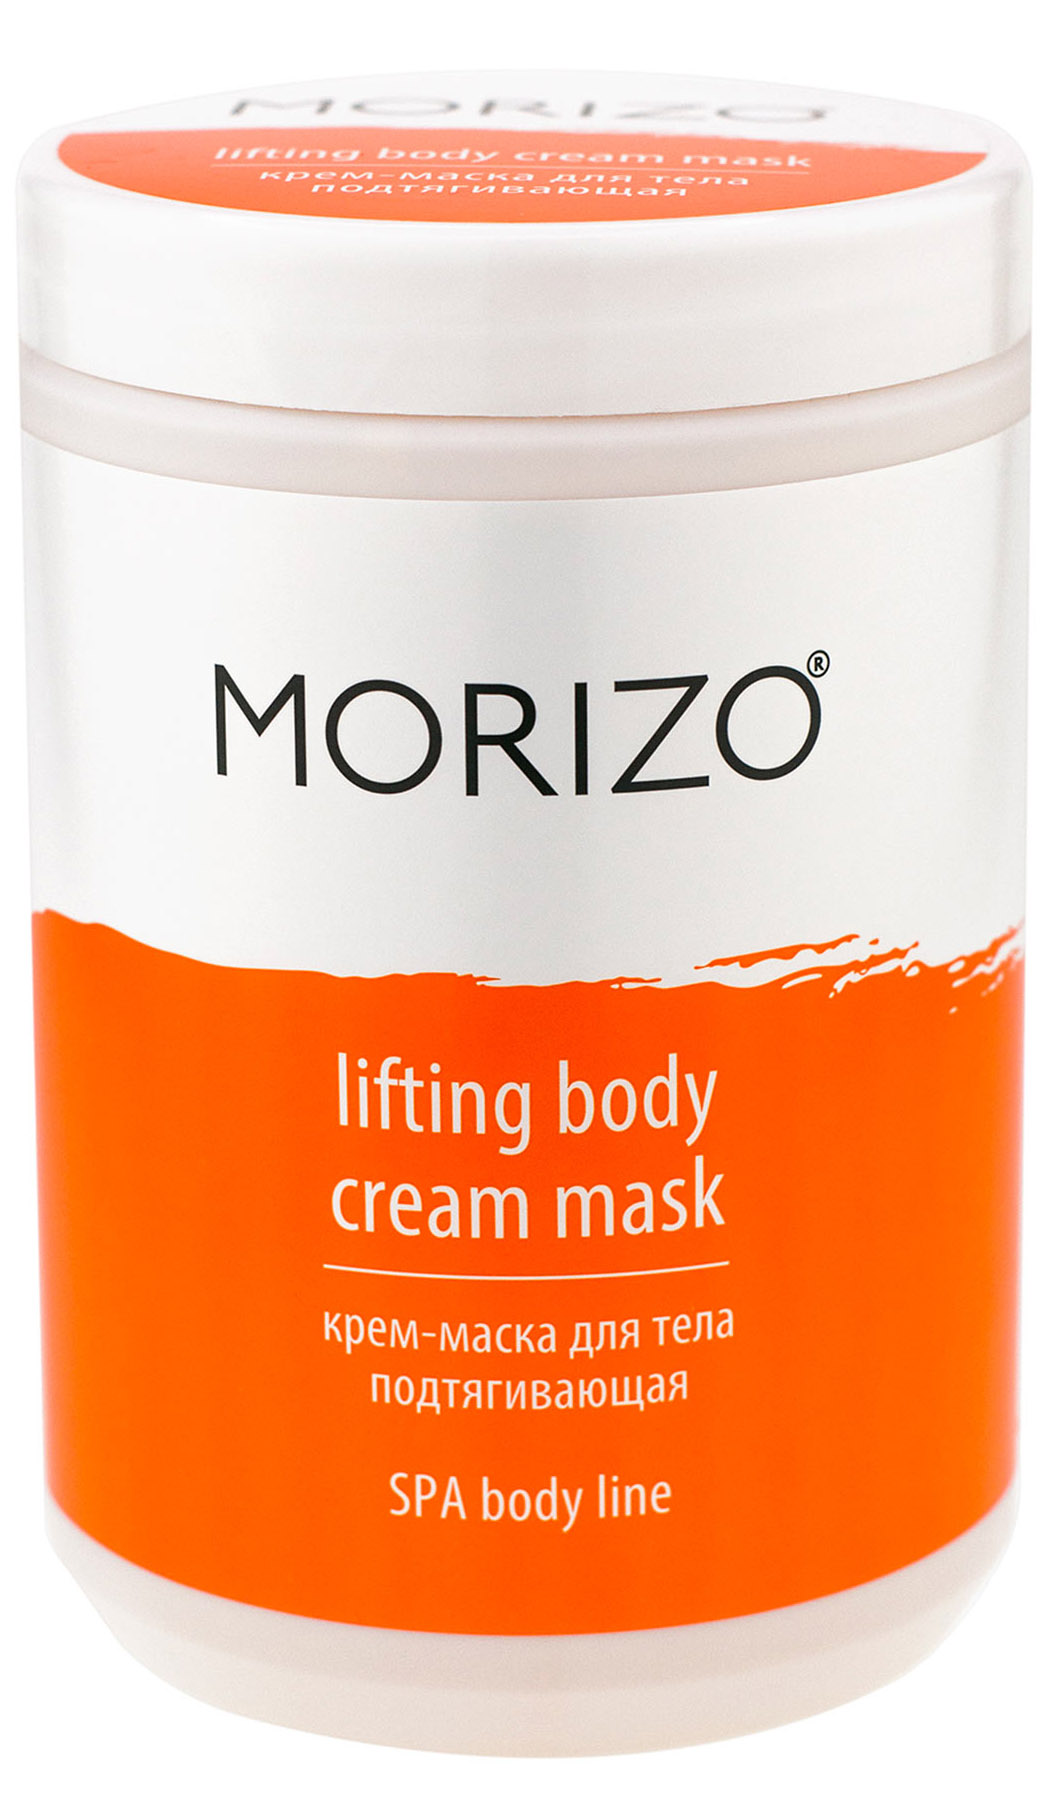 Morizo Крем-маска для тела подтягивающая, 1000 мл (Morizo, У